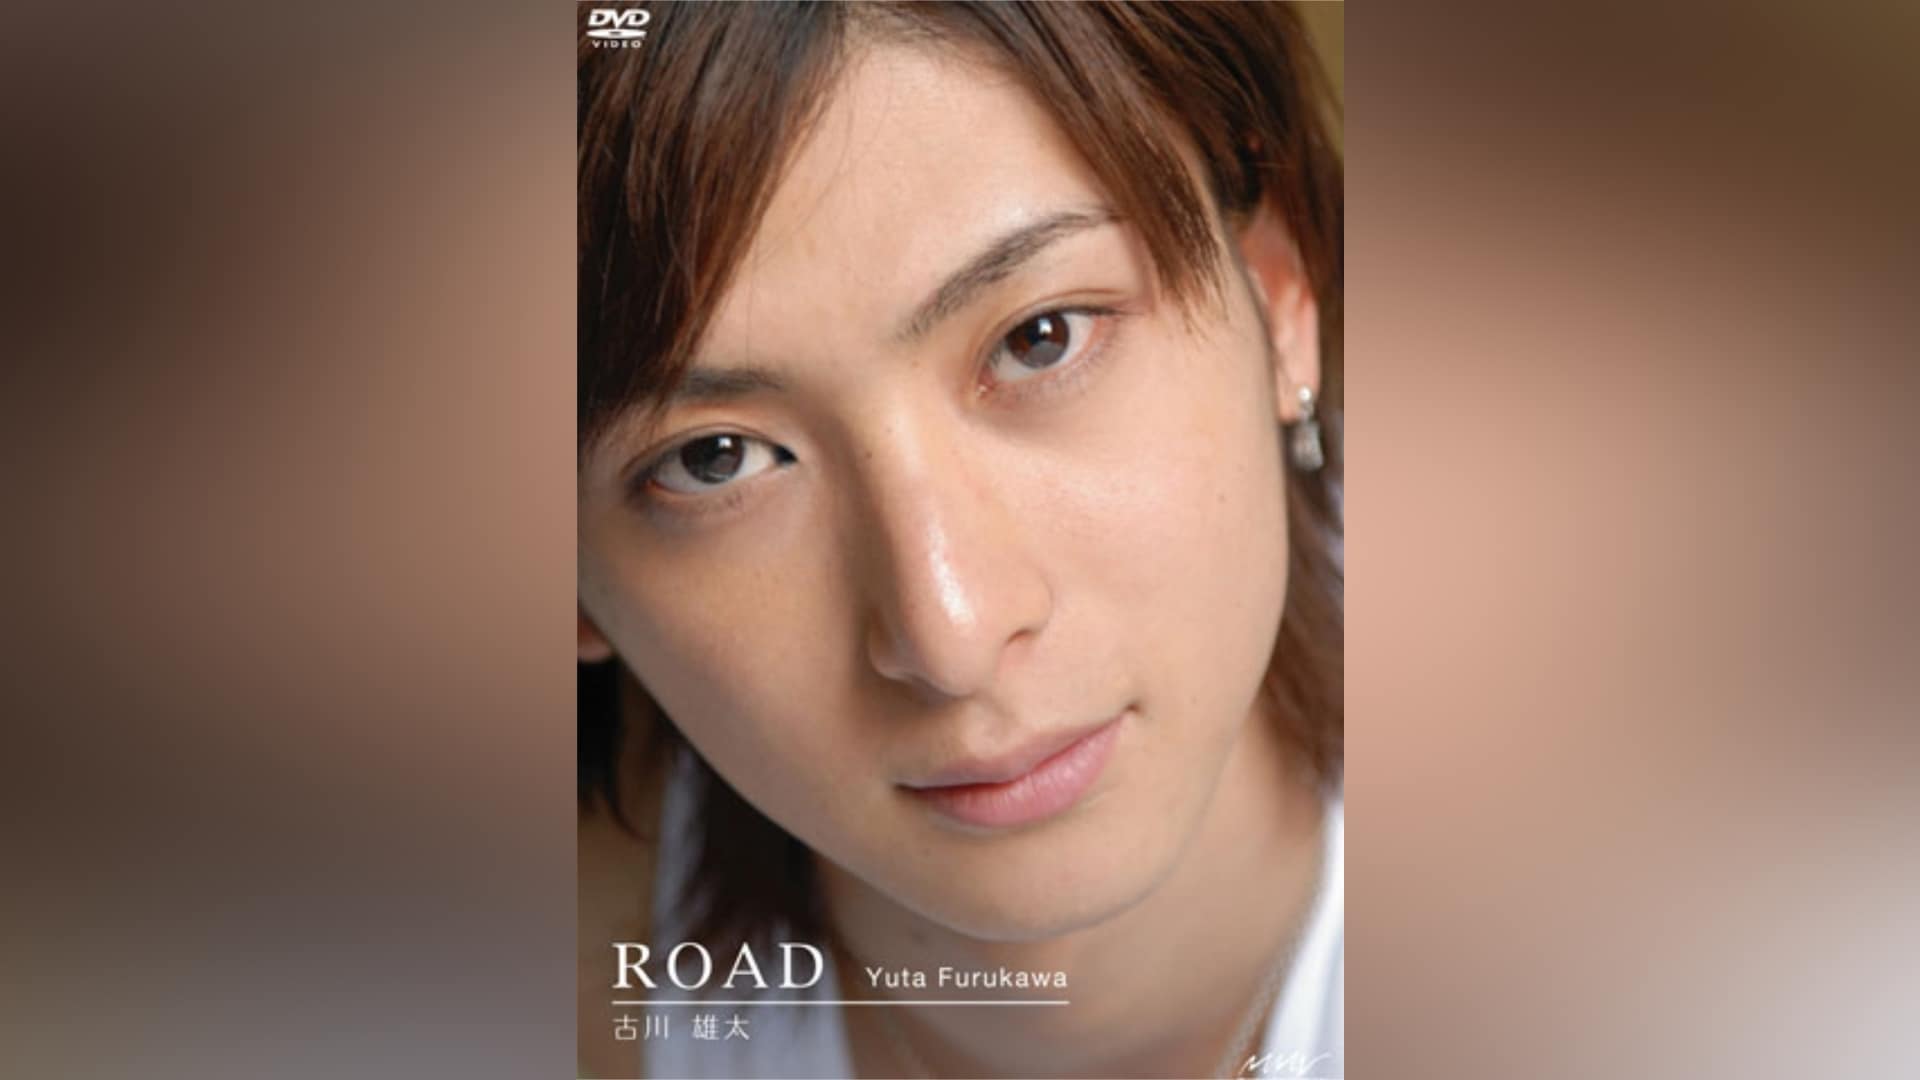 古川雄大 MEN'S DVD SERIES 古川雄大「Road」 - お笑い・バラエティ